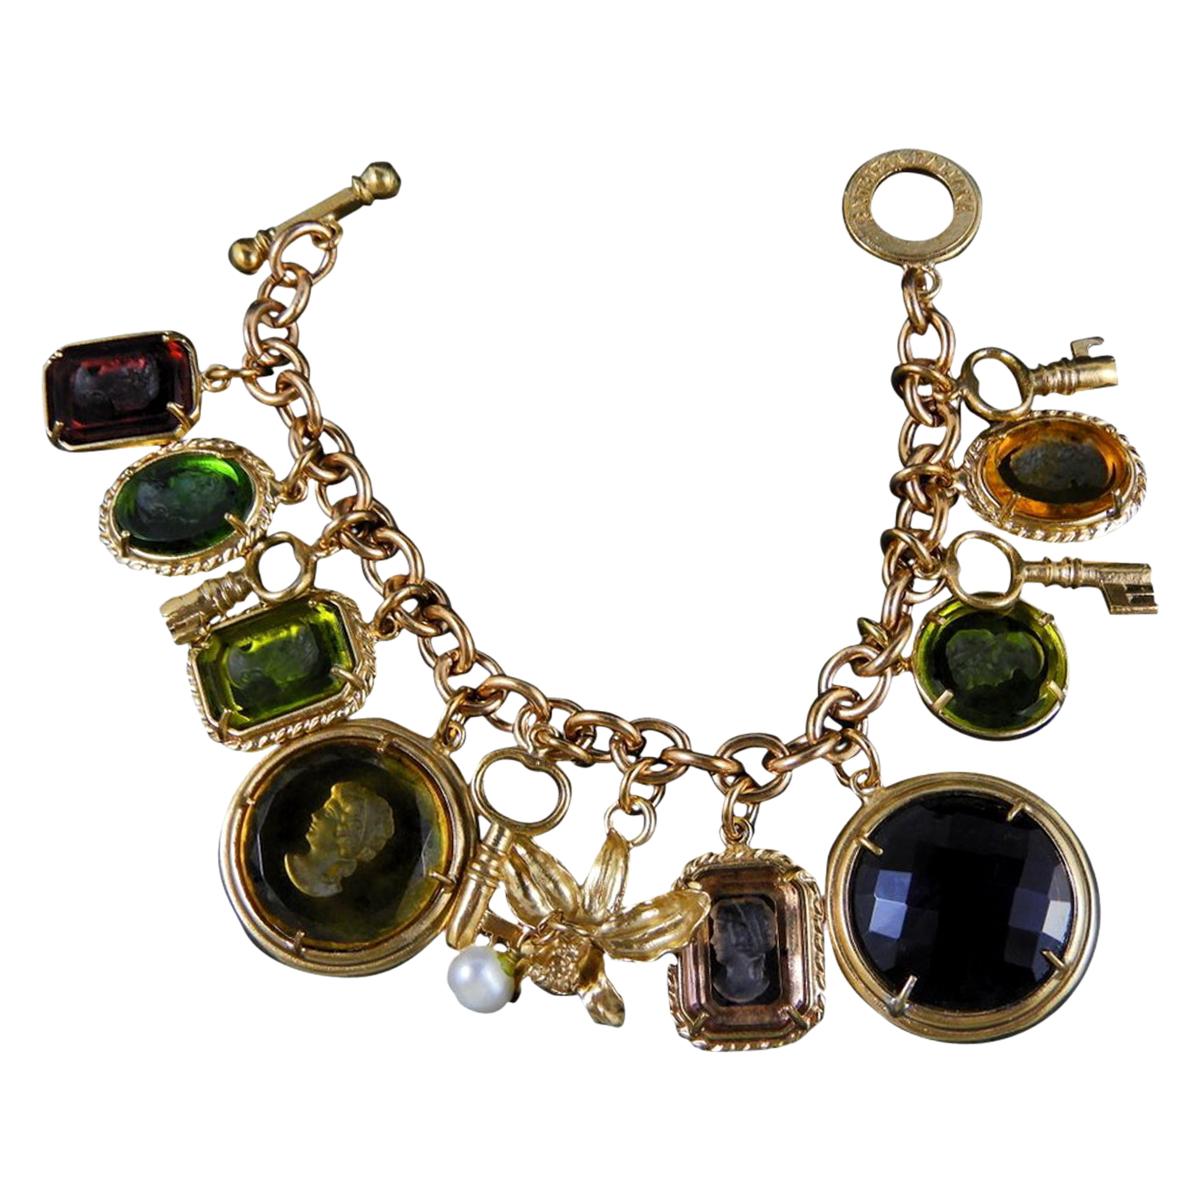 Amazing Bronze and Murano Glass Italian Charm Bracelet by Patrizia Daliana